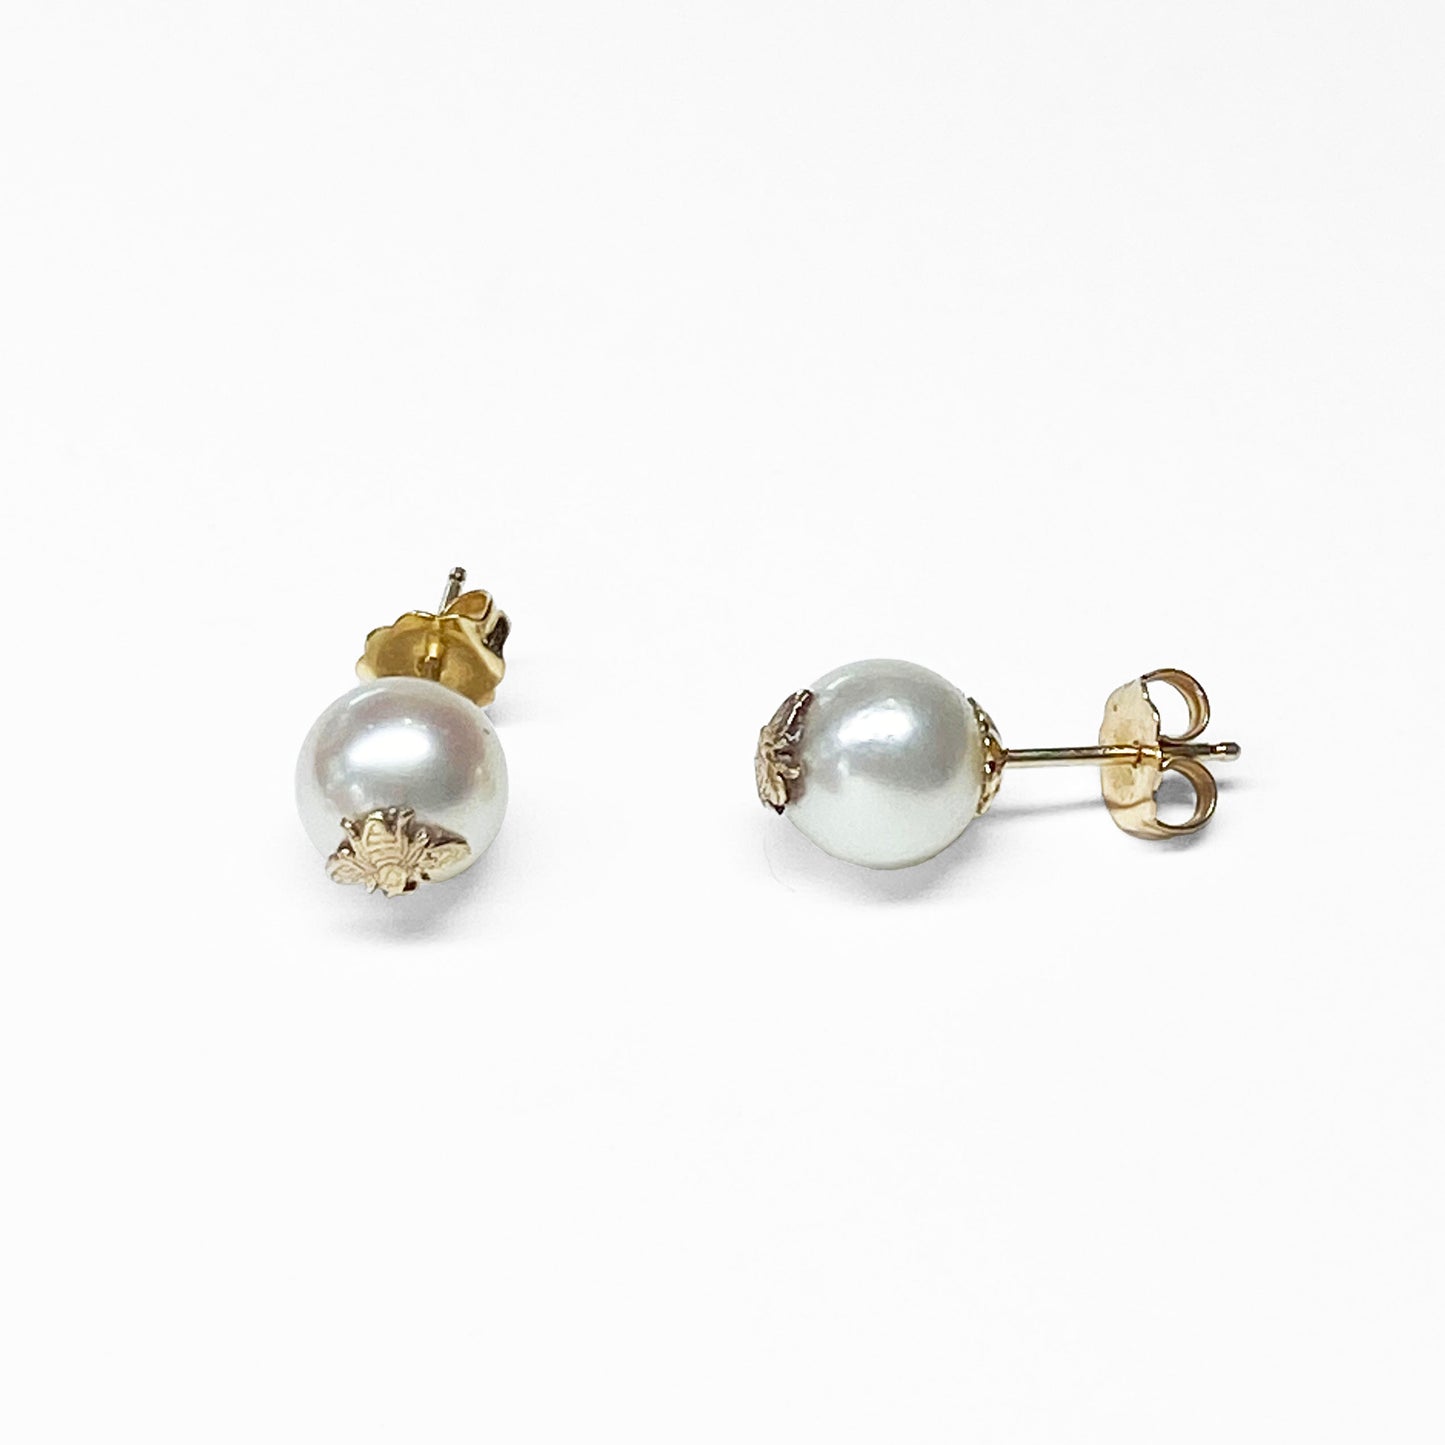 14KY Pearl Stud Earrings with Bee Detail - eklektic jewelry studio